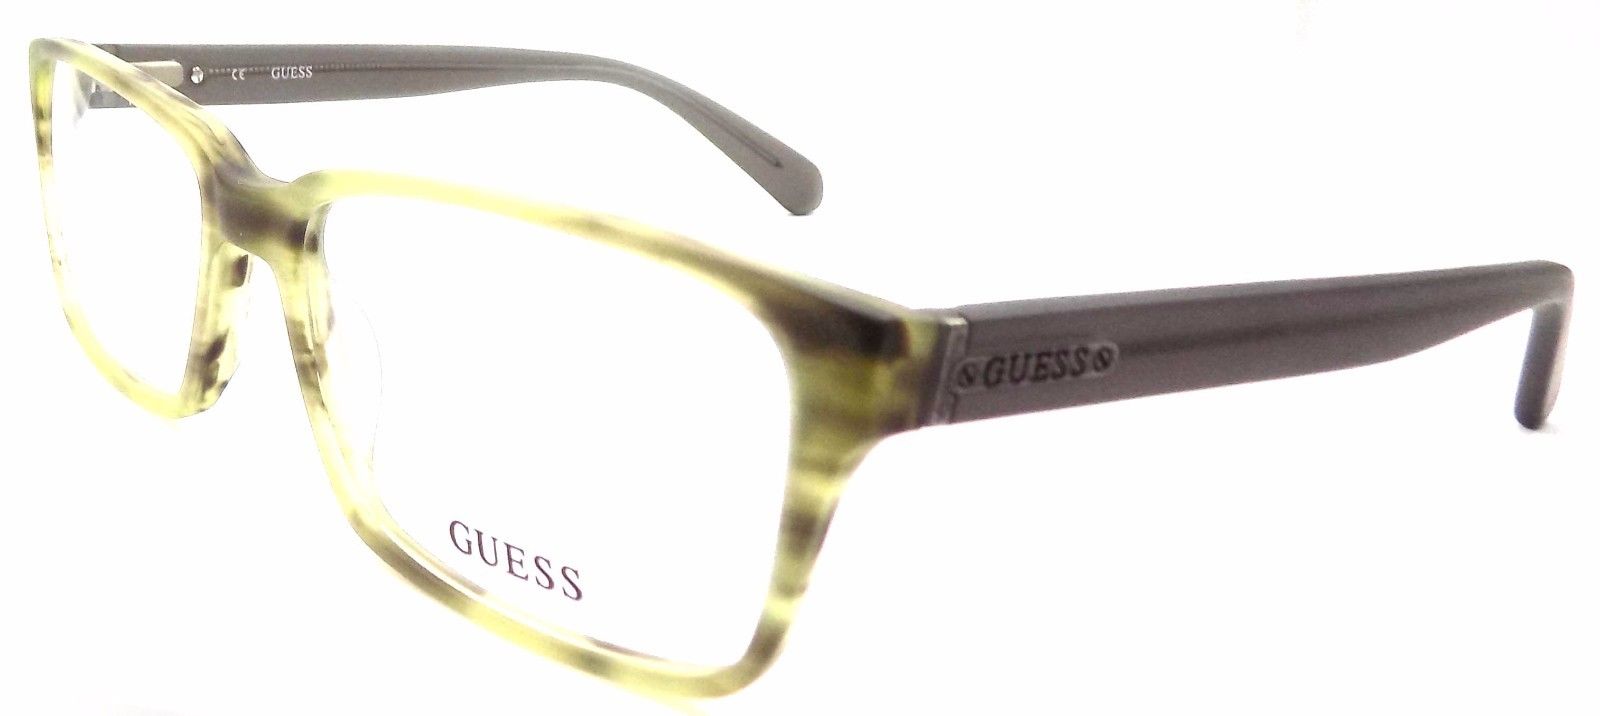 1-GUESS GU1843 GRN Men's Eyeglasses Frames 55-17-145 Matte Green + Case-715583293168-IKSpecs